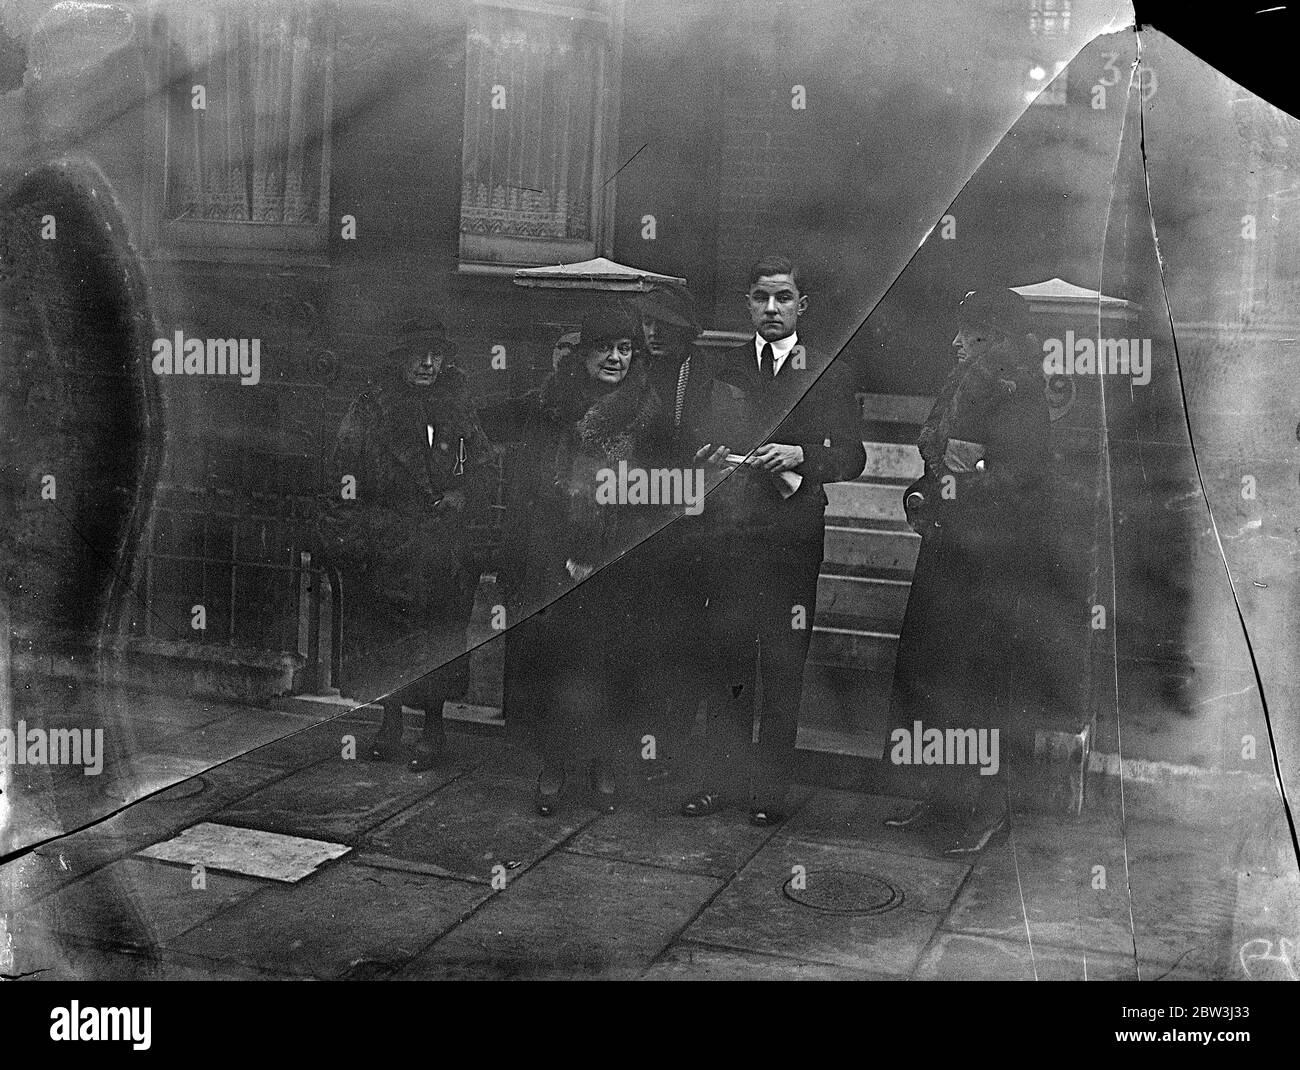 Körper von Earl Jellicoe kommt in Westminster Abbey für liegen in Staat. Der Körper von Earl Jellicoe wurde nach Westminster Abbey von seinem Haus in Egerton Gardens, für die liegen im Staat bis zum Staatsbegräbnis auf London. Foto zeigt, die Witwe, Lady Jellicoe, und die 17 Jahre alte neue Earl Jellicoe beobachten den Sarg verlassen für Westminster Abbey. 22. November 1935 Stockfoto